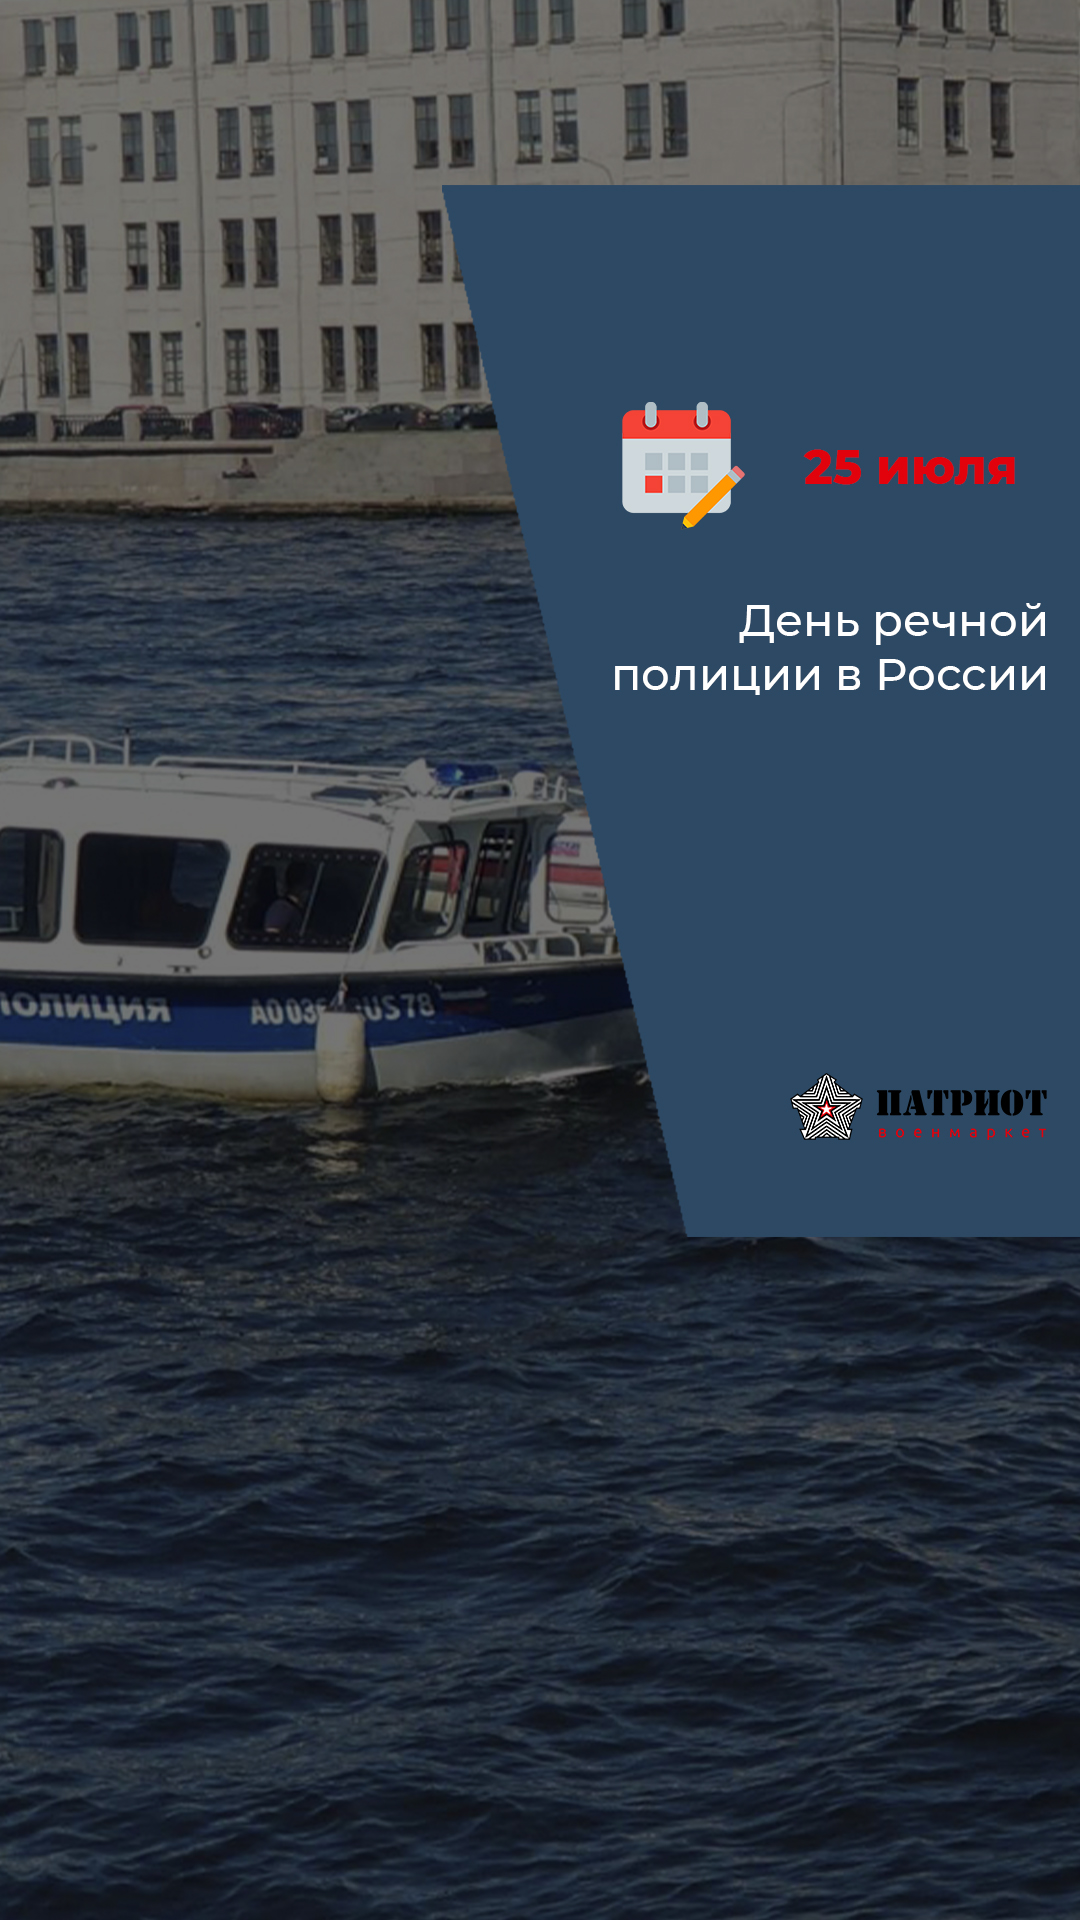 25 июля  - День речной полиции в России